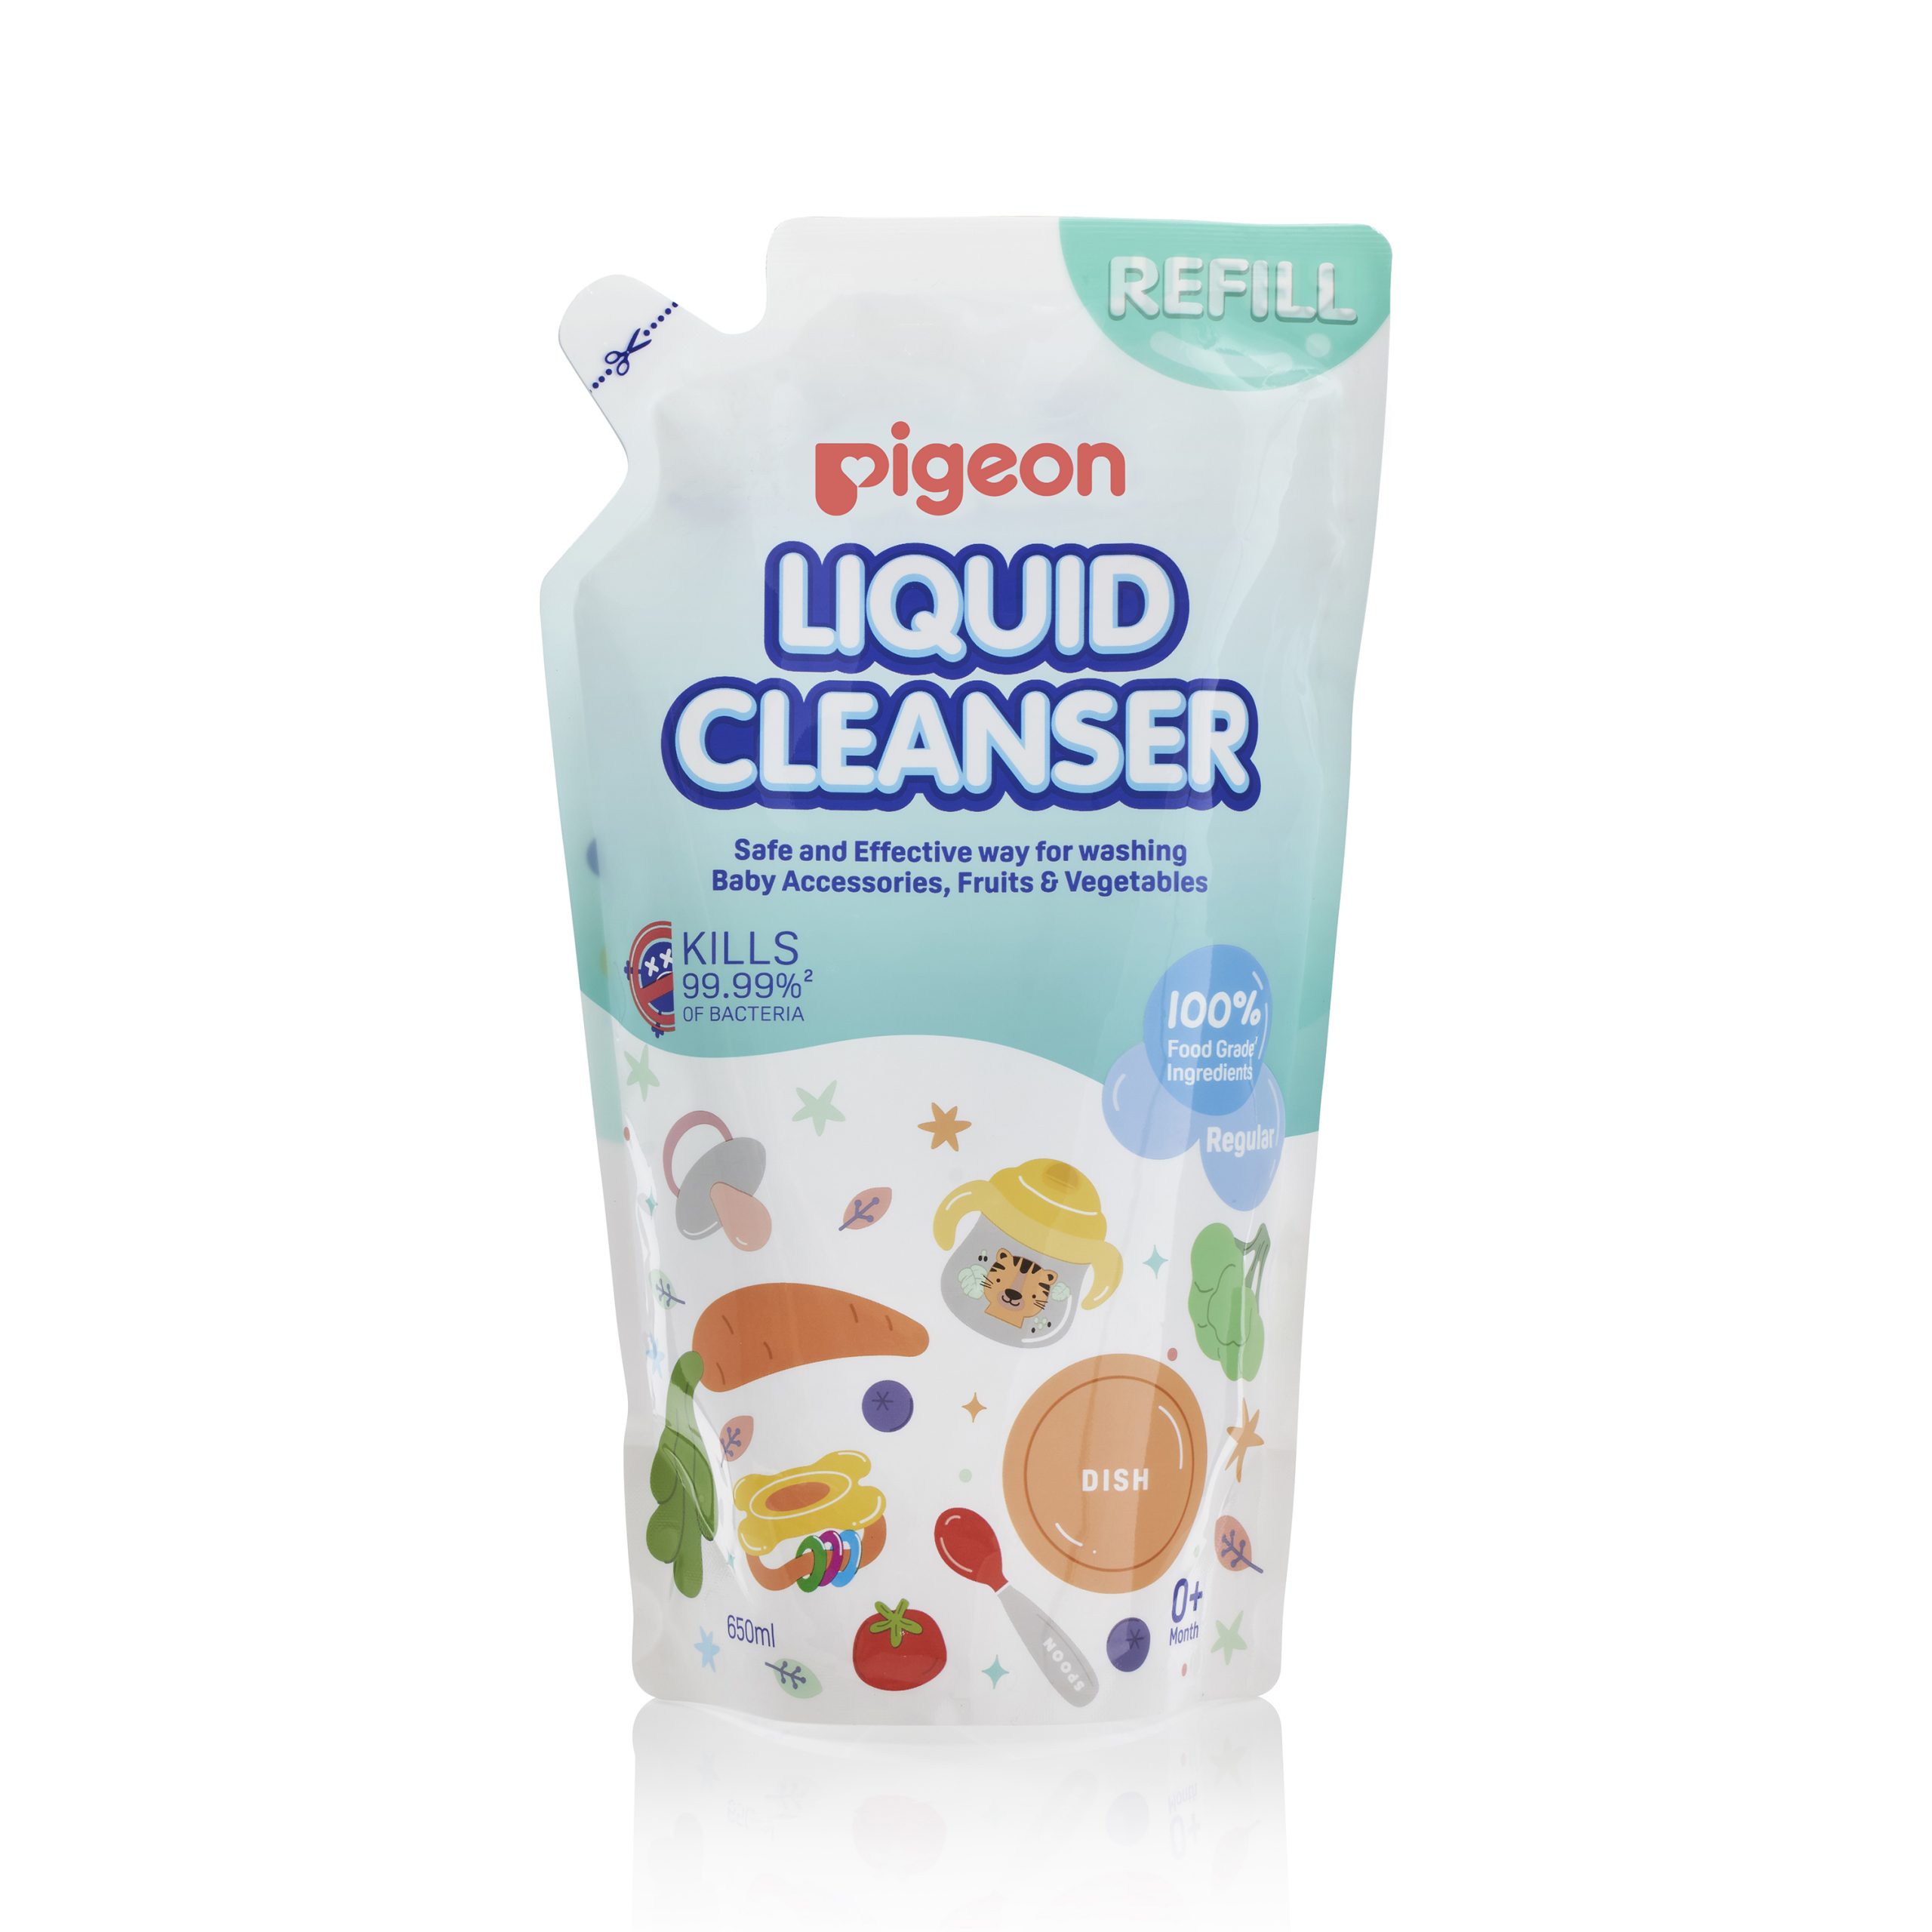 Pigeon Liquid Cleanser Refill 650ml (PG-79474A)